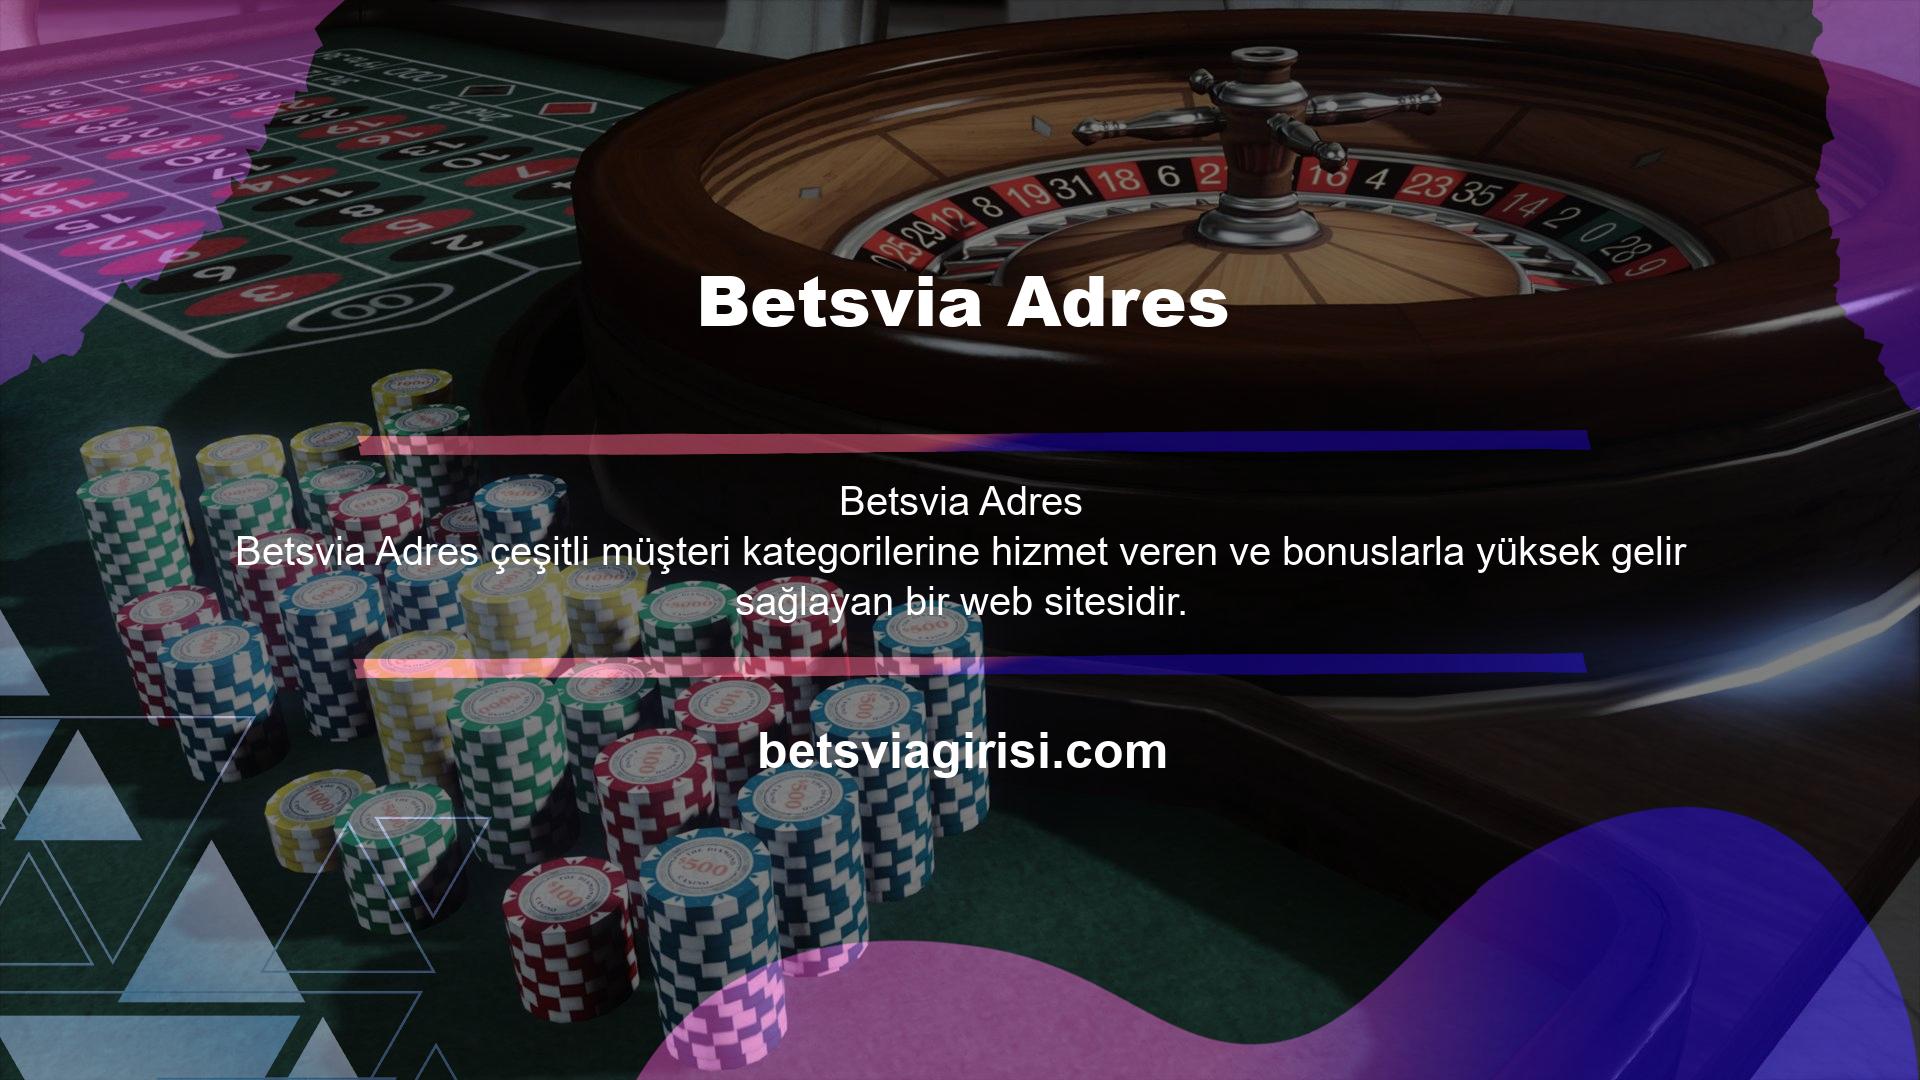 Betsvia web sitesinde birçok slot makinesi oyunu bulunmaktadır